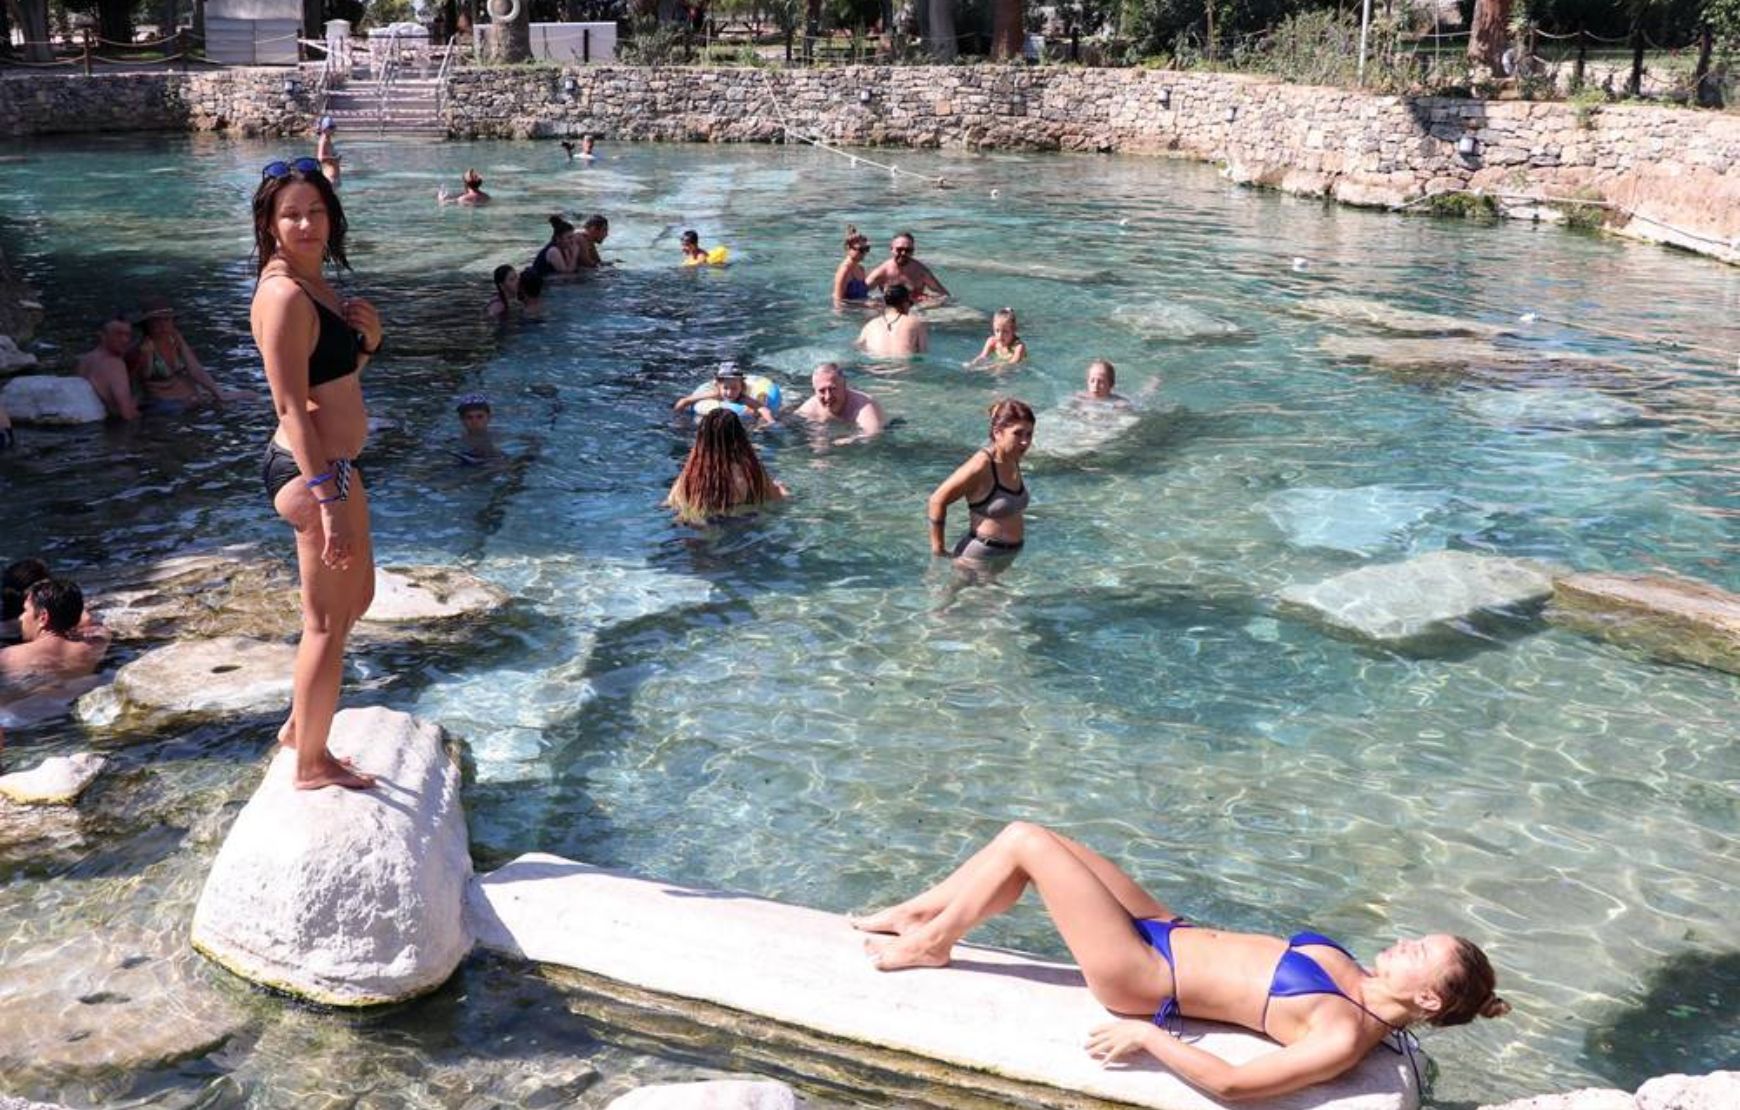 Enjoy Cleopatra's pool in Pamukkale